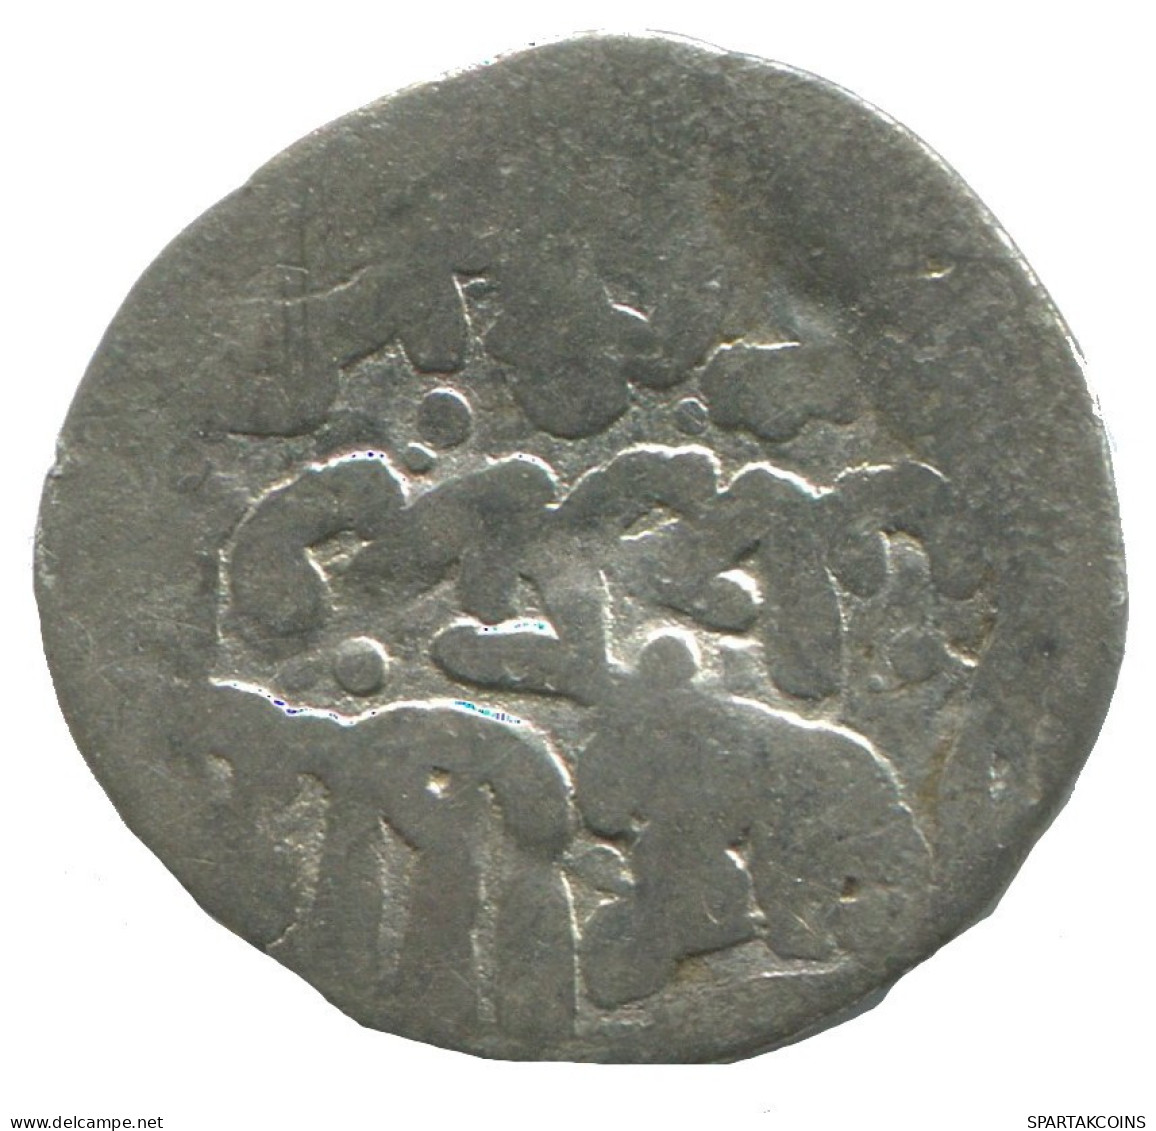 GOLDEN HORDE Silver Dirham Medieval Islamic Coin 1g/18mm #NNN1987.8.E.A - Islamitisch